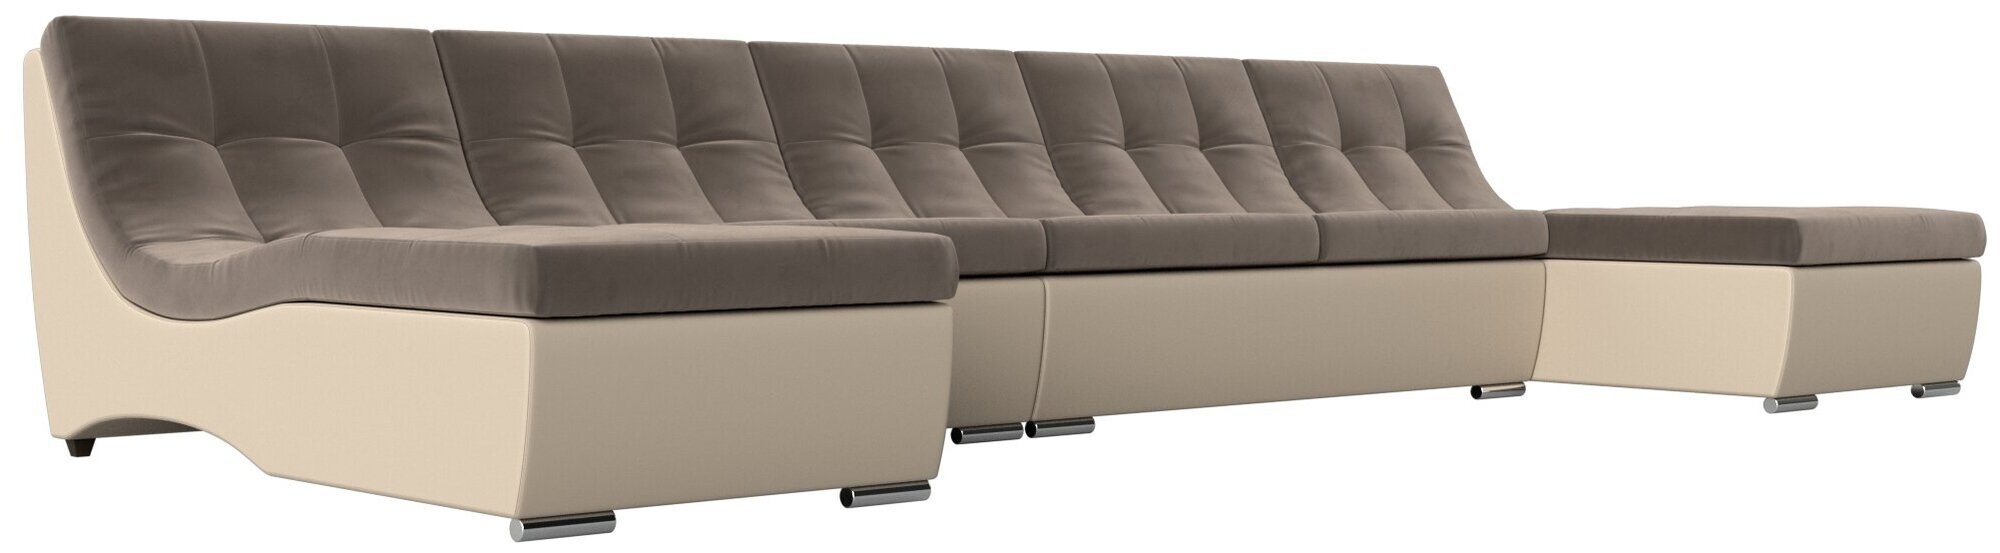 П-образный модульный диван Монреаль Long, Велюр, Модель 111523